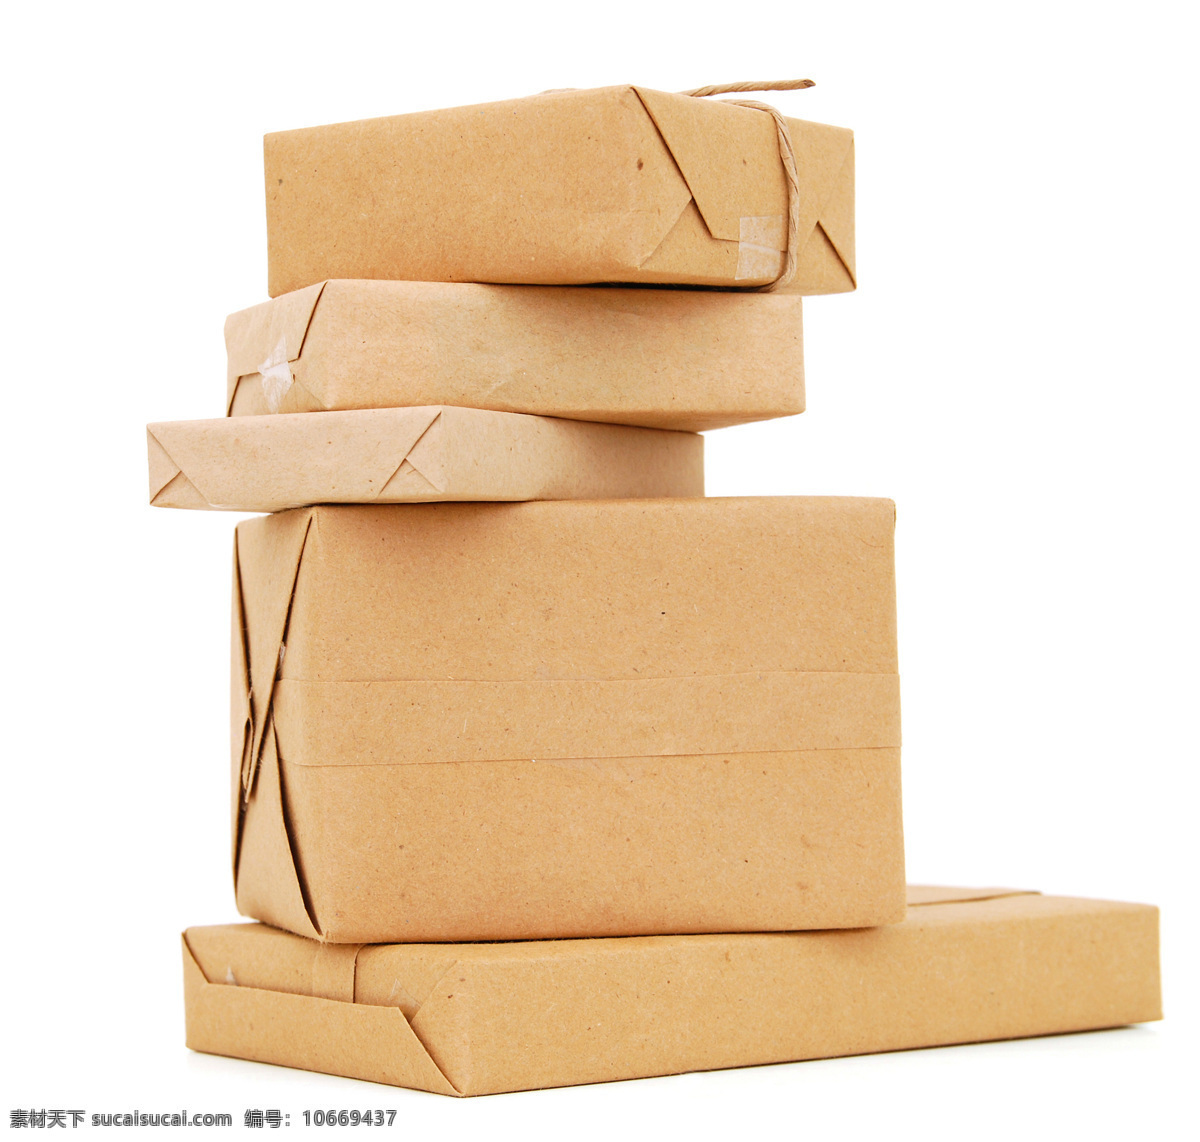 包装纸盒 纸箱 纸盒 外箱 包装纸箱 生活用品 生活百科